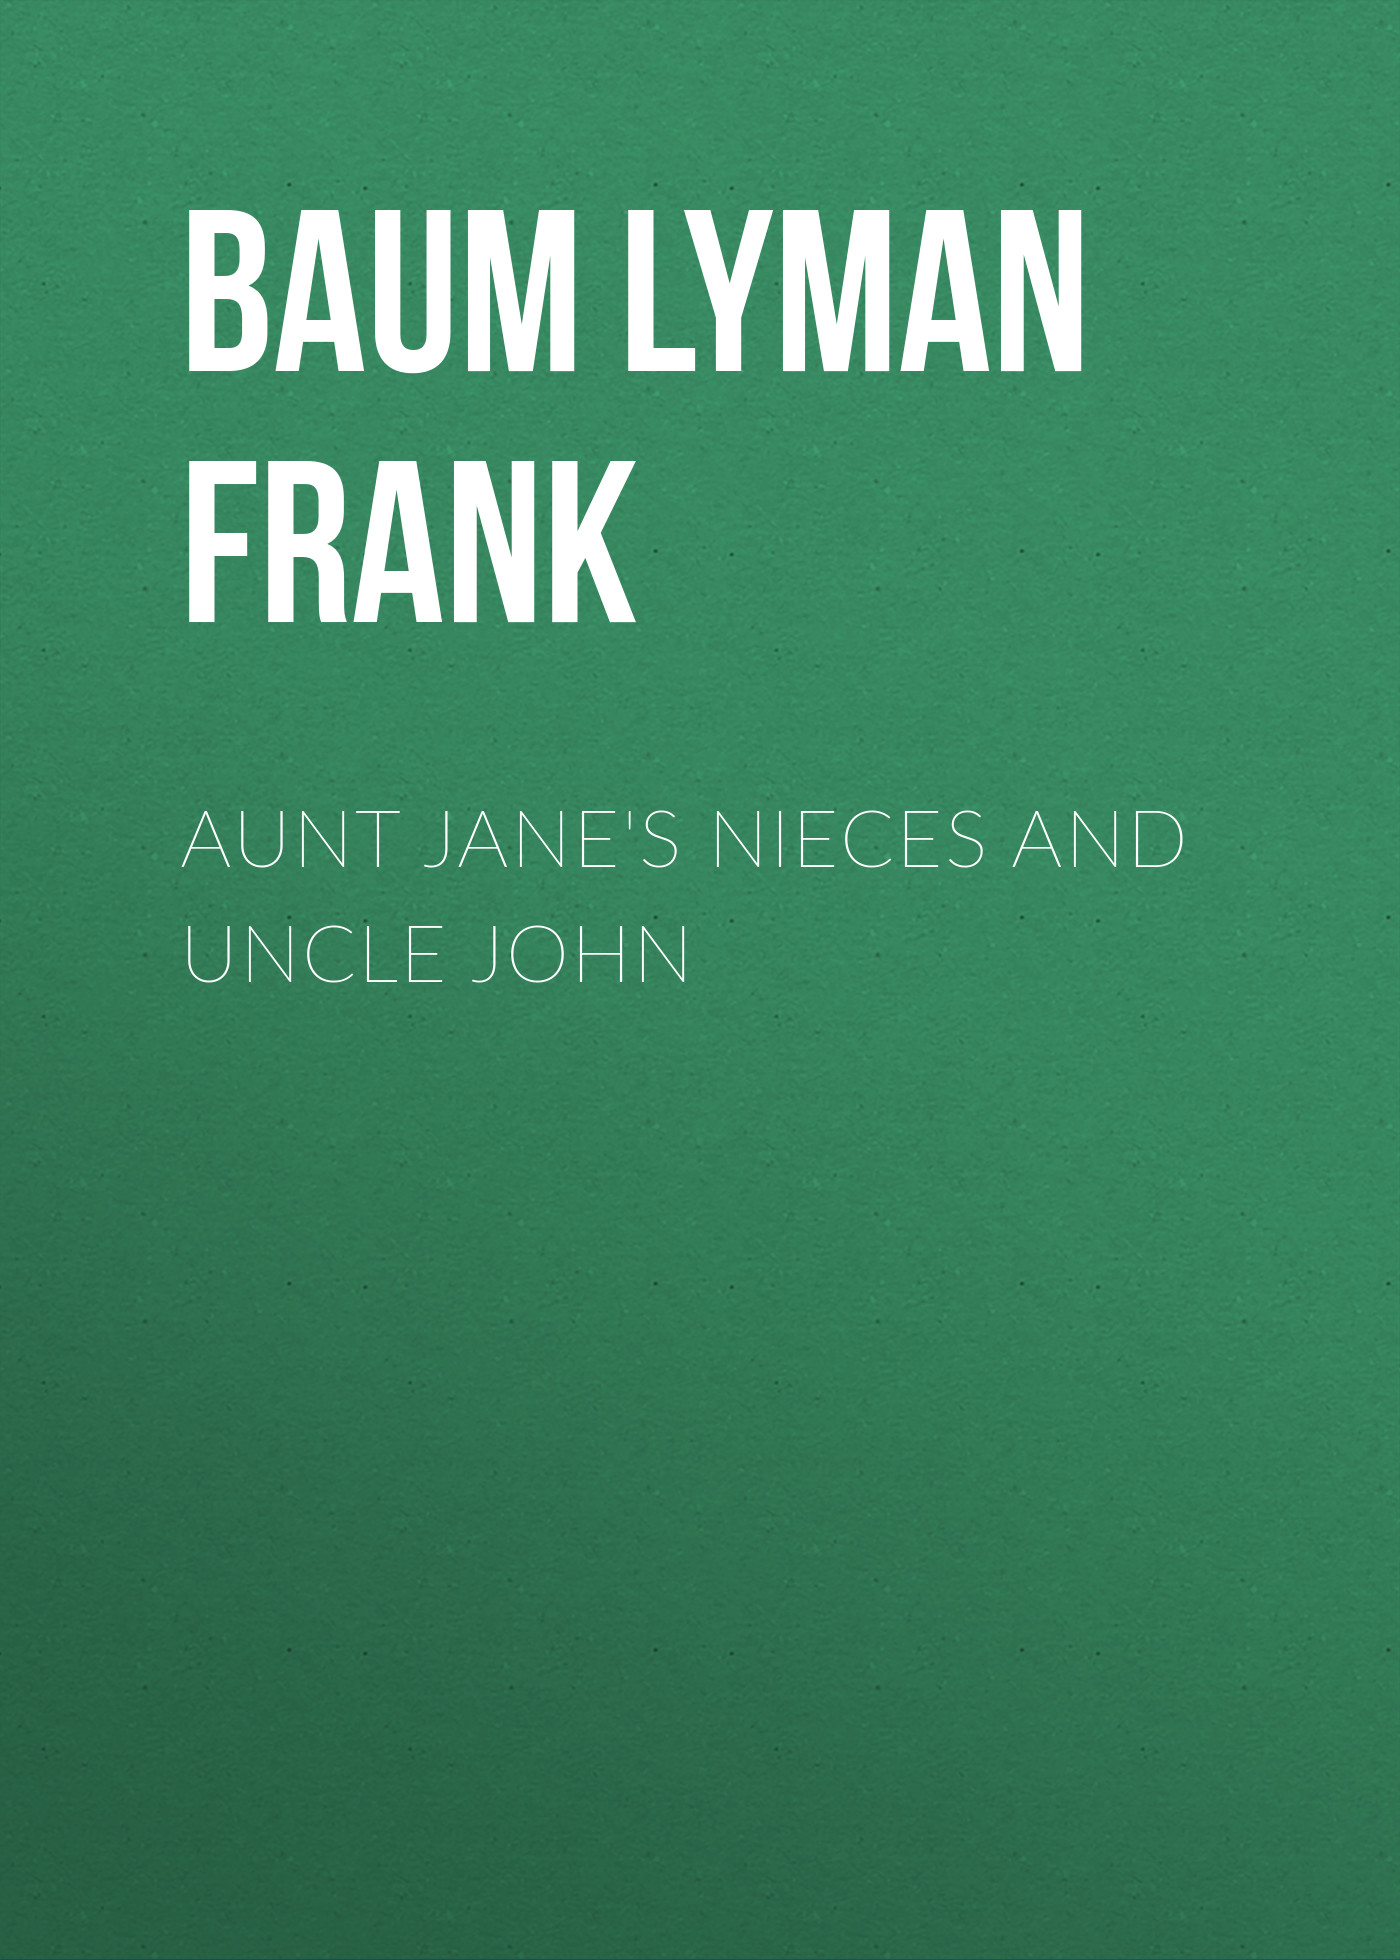 Книга Aunt Jane's Nieces and Uncle John из серии , созданная Lyman Baum, может относится к жанру Зарубежная старинная литература, Зарубежная классика. Стоимость электронной книги Aunt Jane's Nieces and Uncle John с идентификатором 25018987 составляет 0 руб.